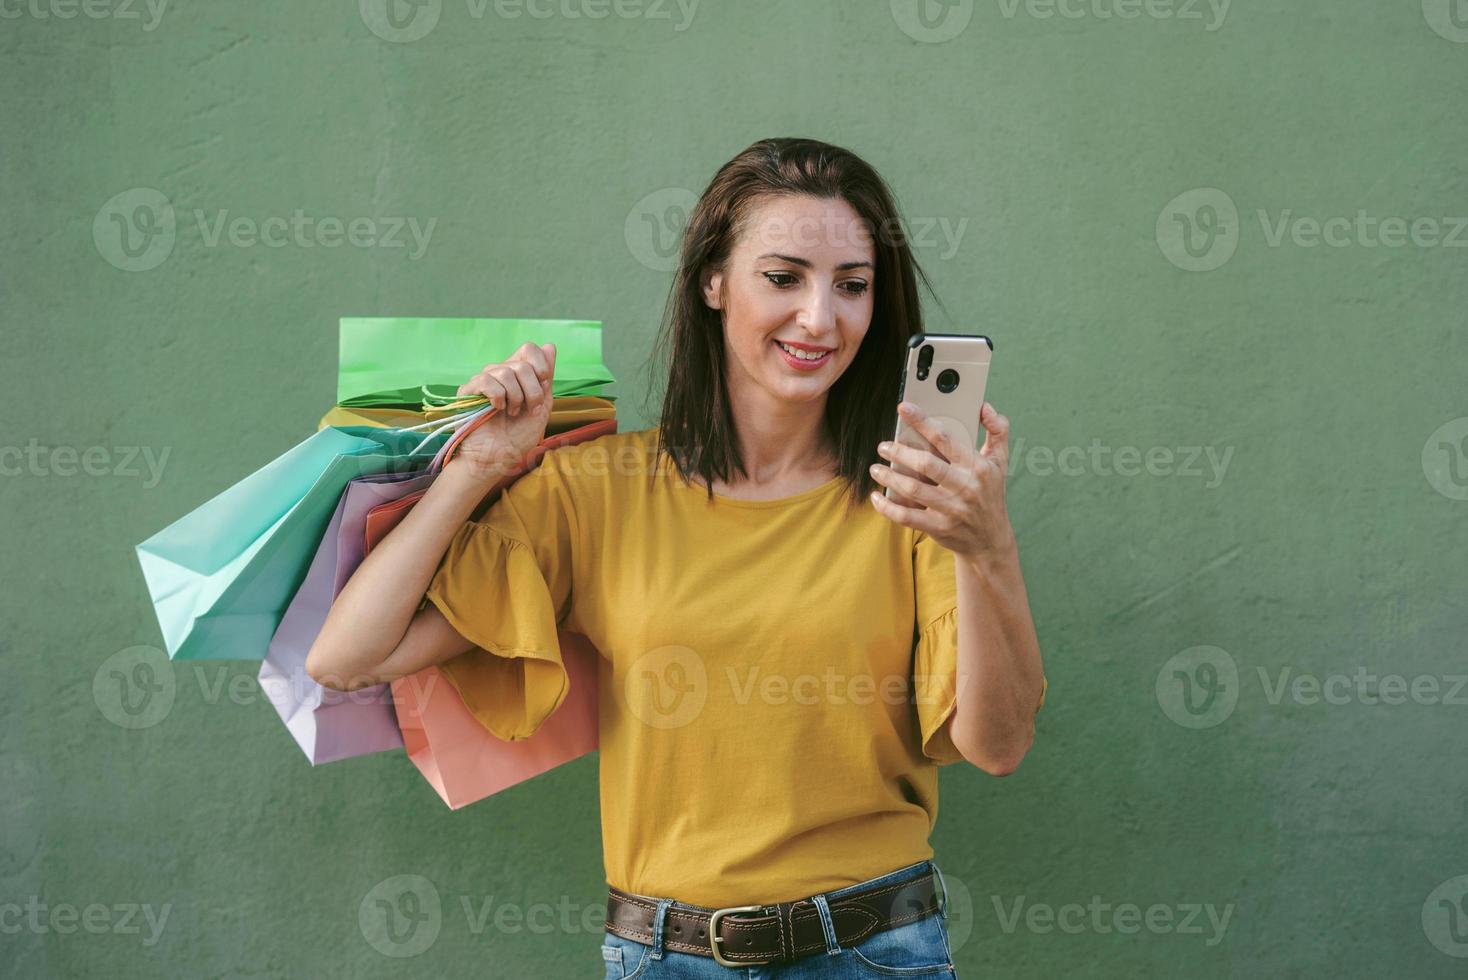 jeune femme heureuse tenant un sac à provisions et un smartphone photo